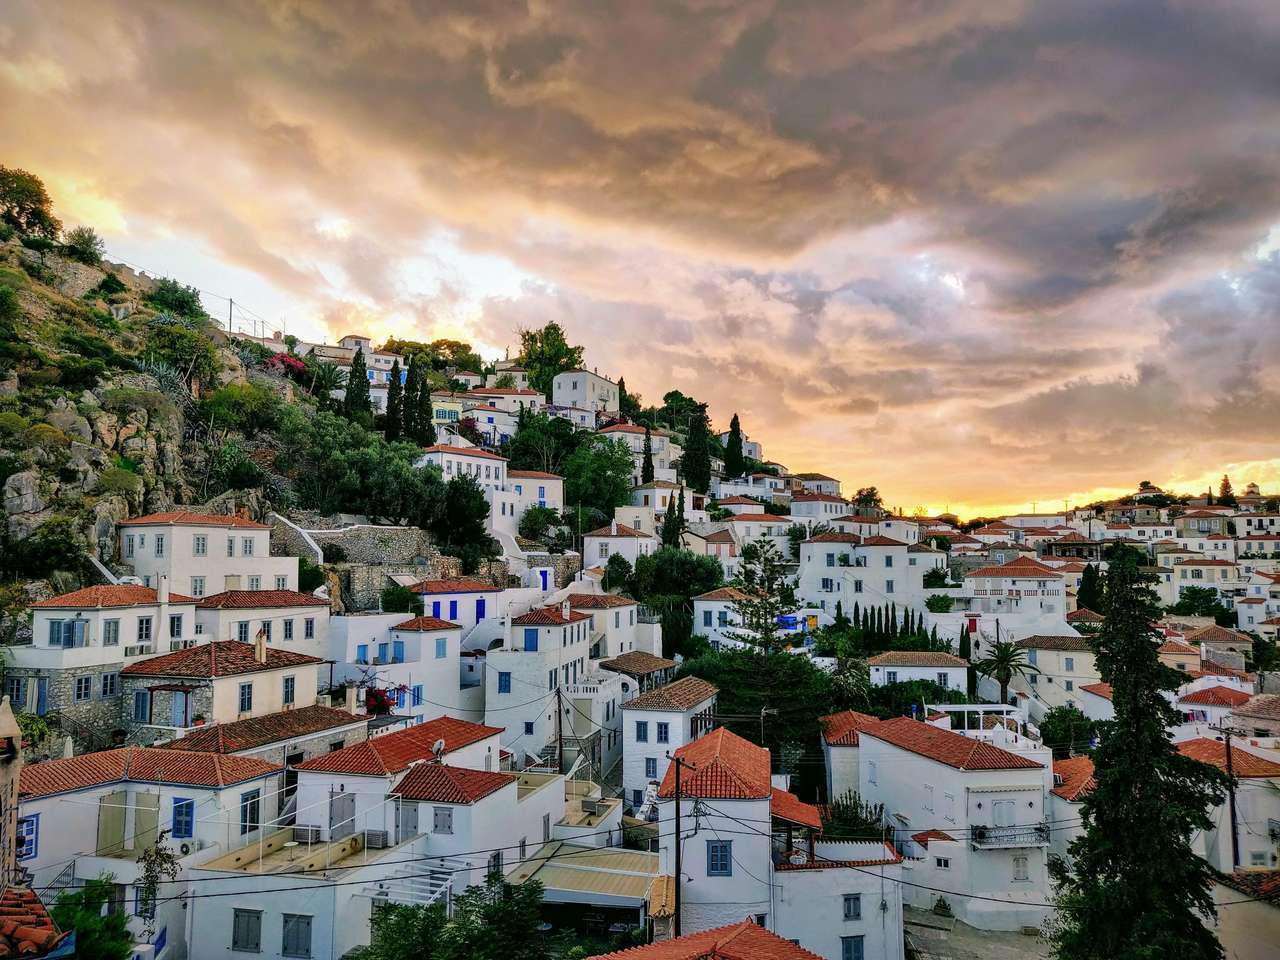 Гидра, Греция пазл онлайн